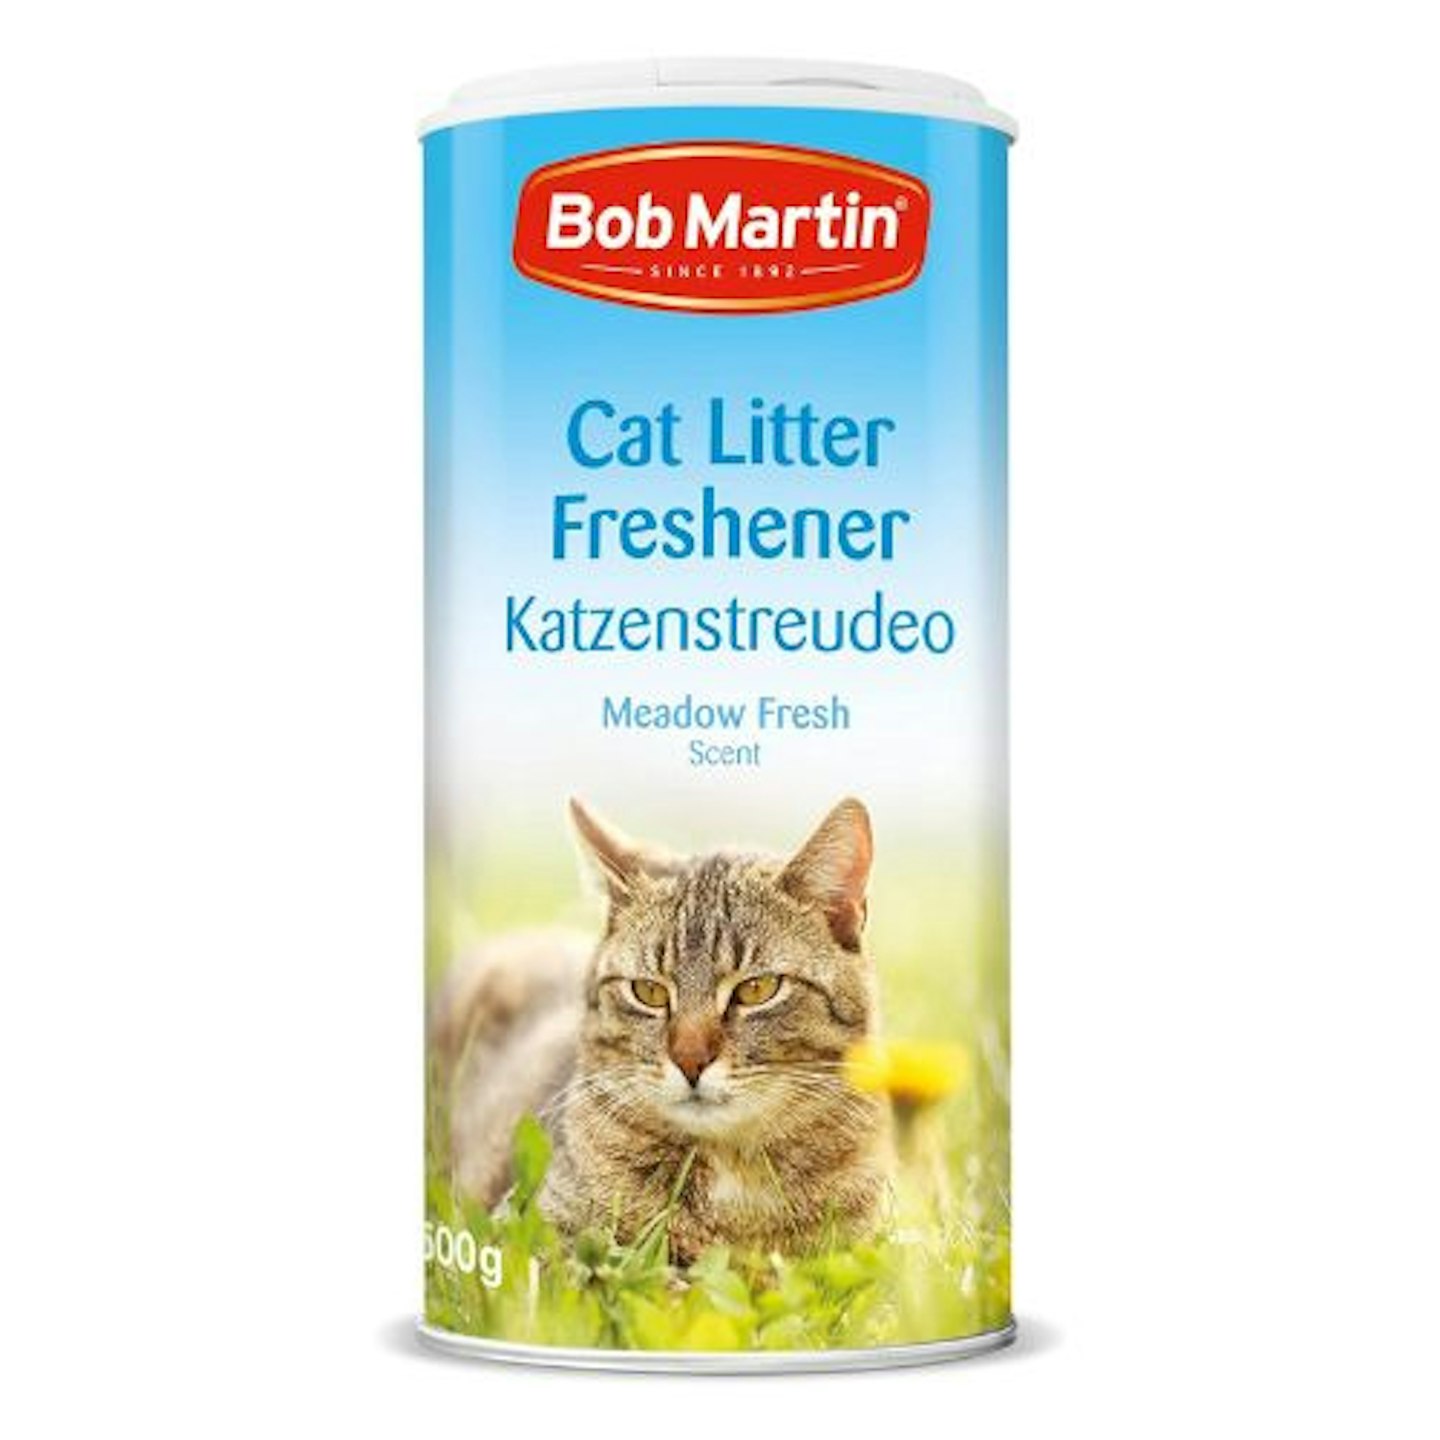 Bob Martin Cat Litter Freshener Powder, Meadow Fresh Scent - Effective Odour Control for Longer Lasting Freshness, Made in the UK (500g)